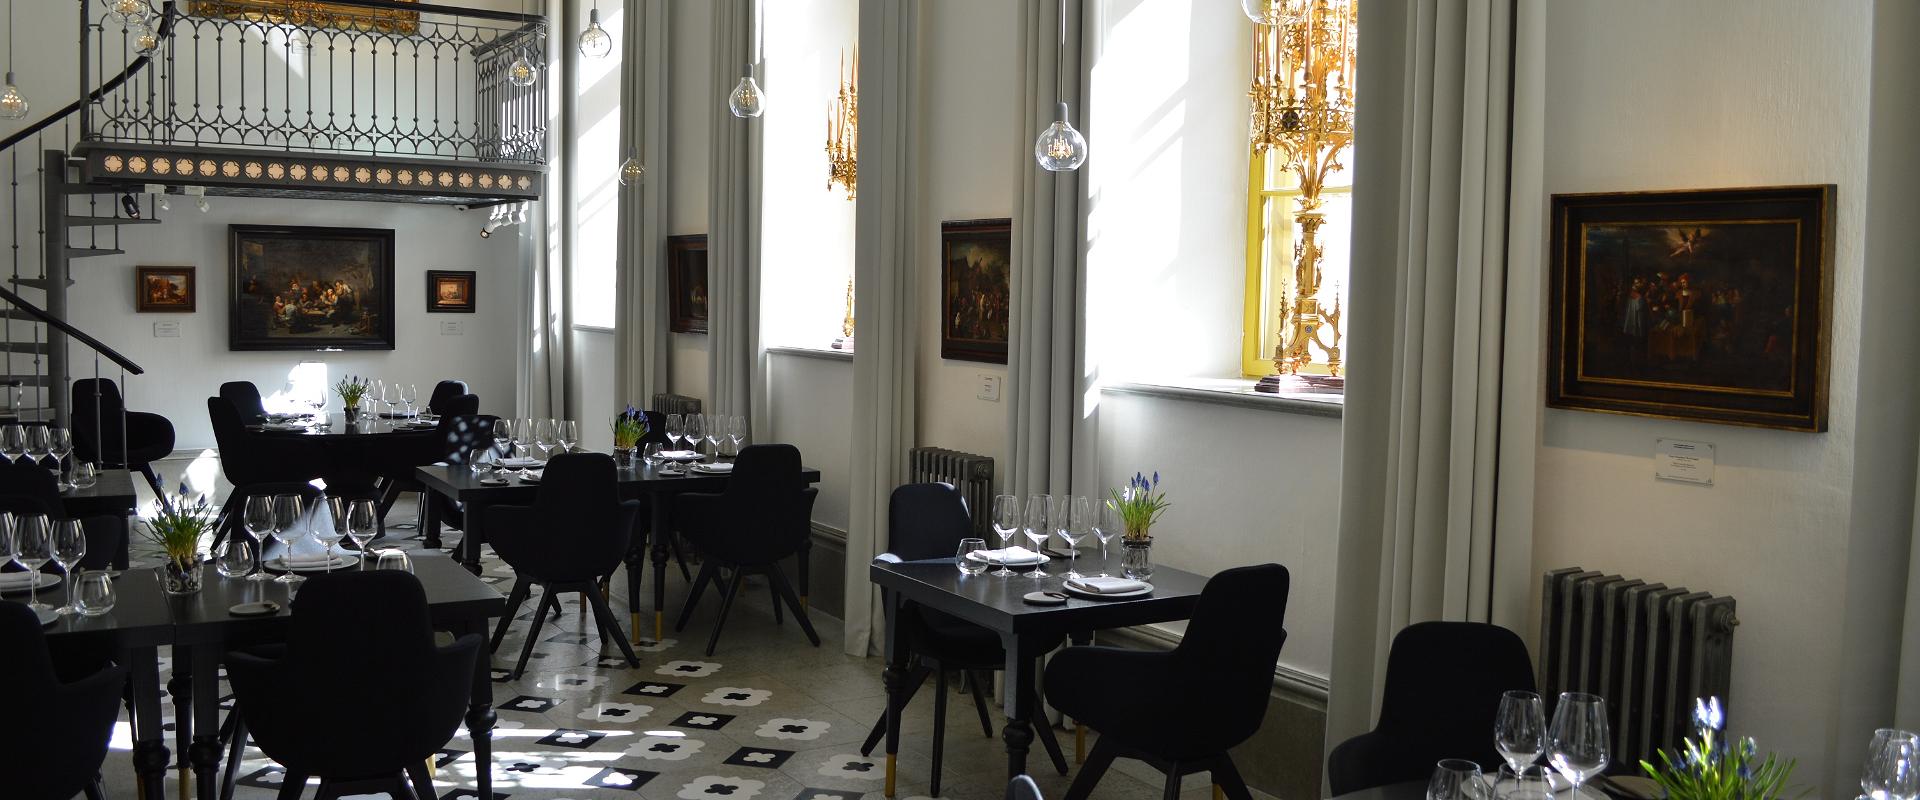 Restoran Art Priori - eksklusiivne kunstirestoran Eestis – täiuslikud elamused igale meelele. Erakordne interjöör on inspireeritud gooti arhitektuuris